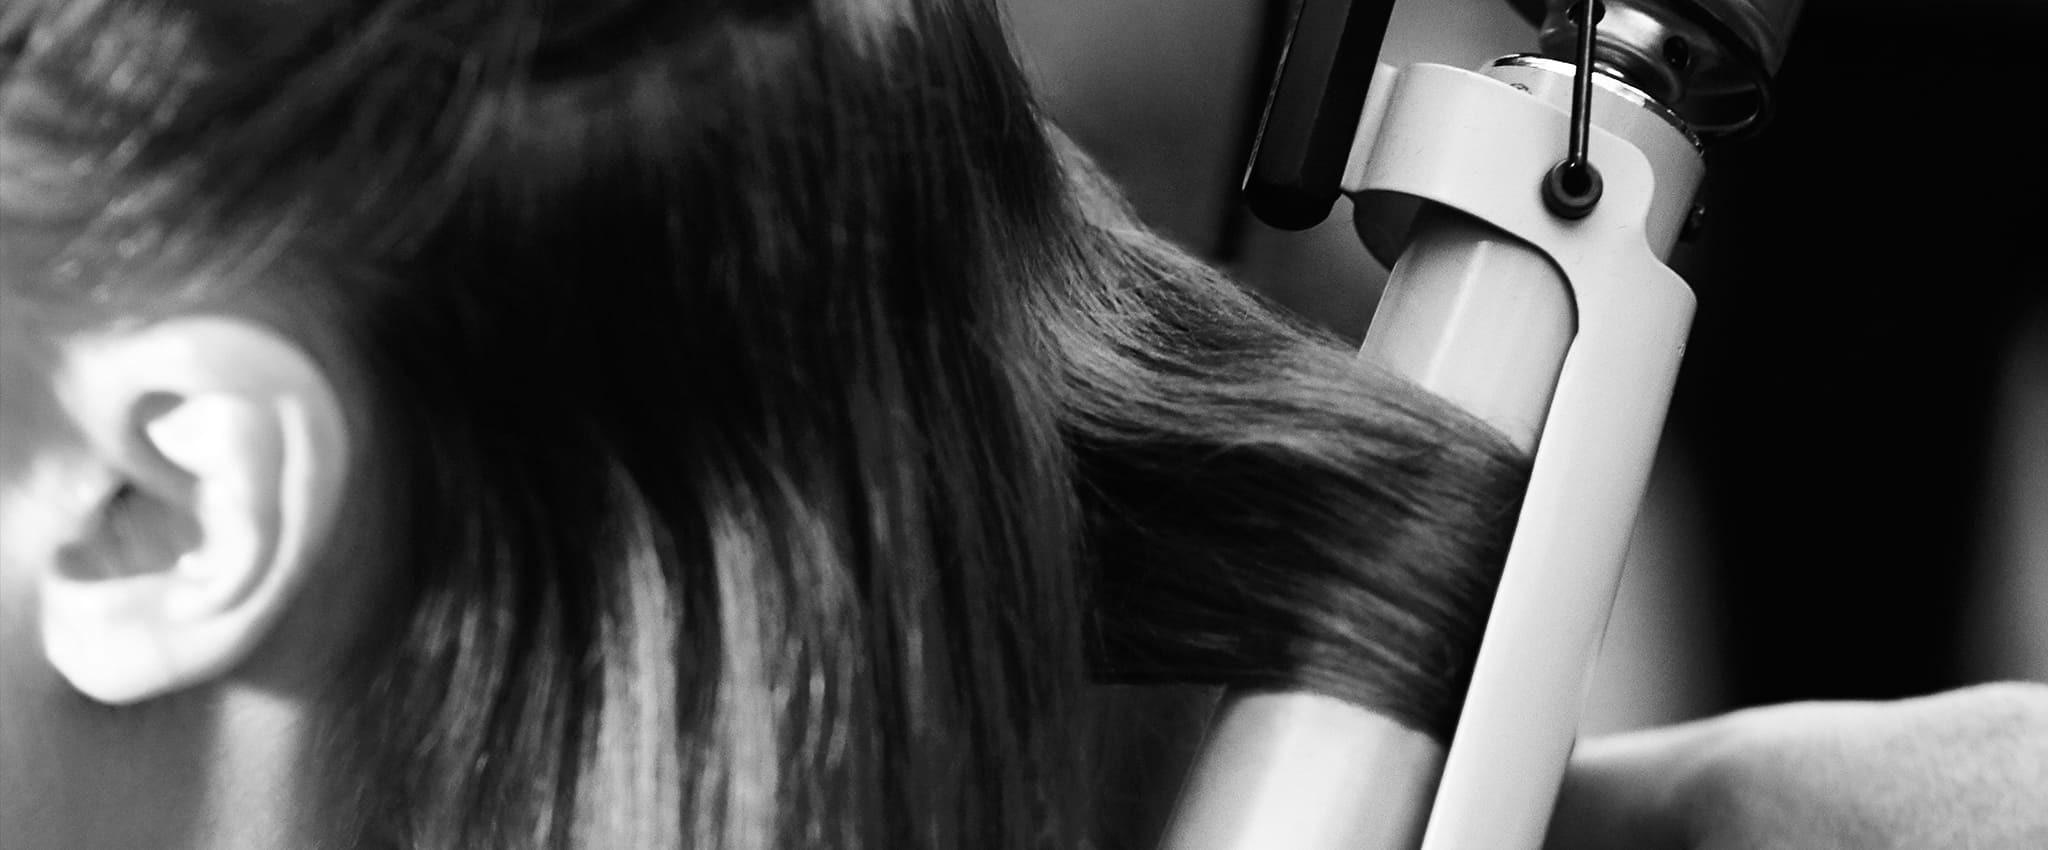 Grande plano a preto e branco da cabeça de uma modelo com uma secção do seu cabelo num modelador e uma mão de um cabeleireiro visível